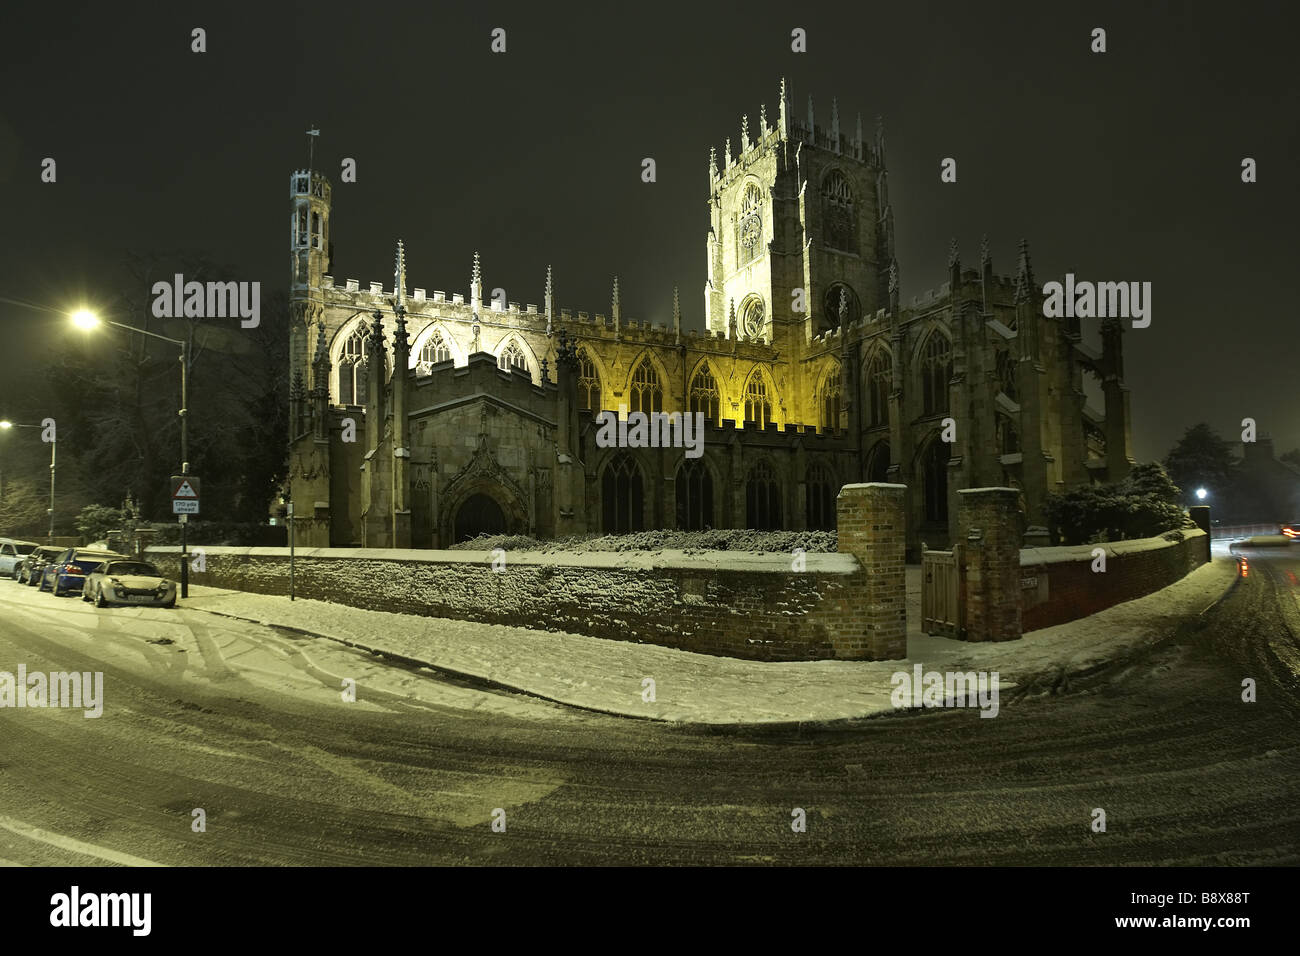 Chiesa di Santa Maria, North Bar interno, tappezzate in snow Beverley, East Riding of Yorkshire, Regno Unito Foto Stock